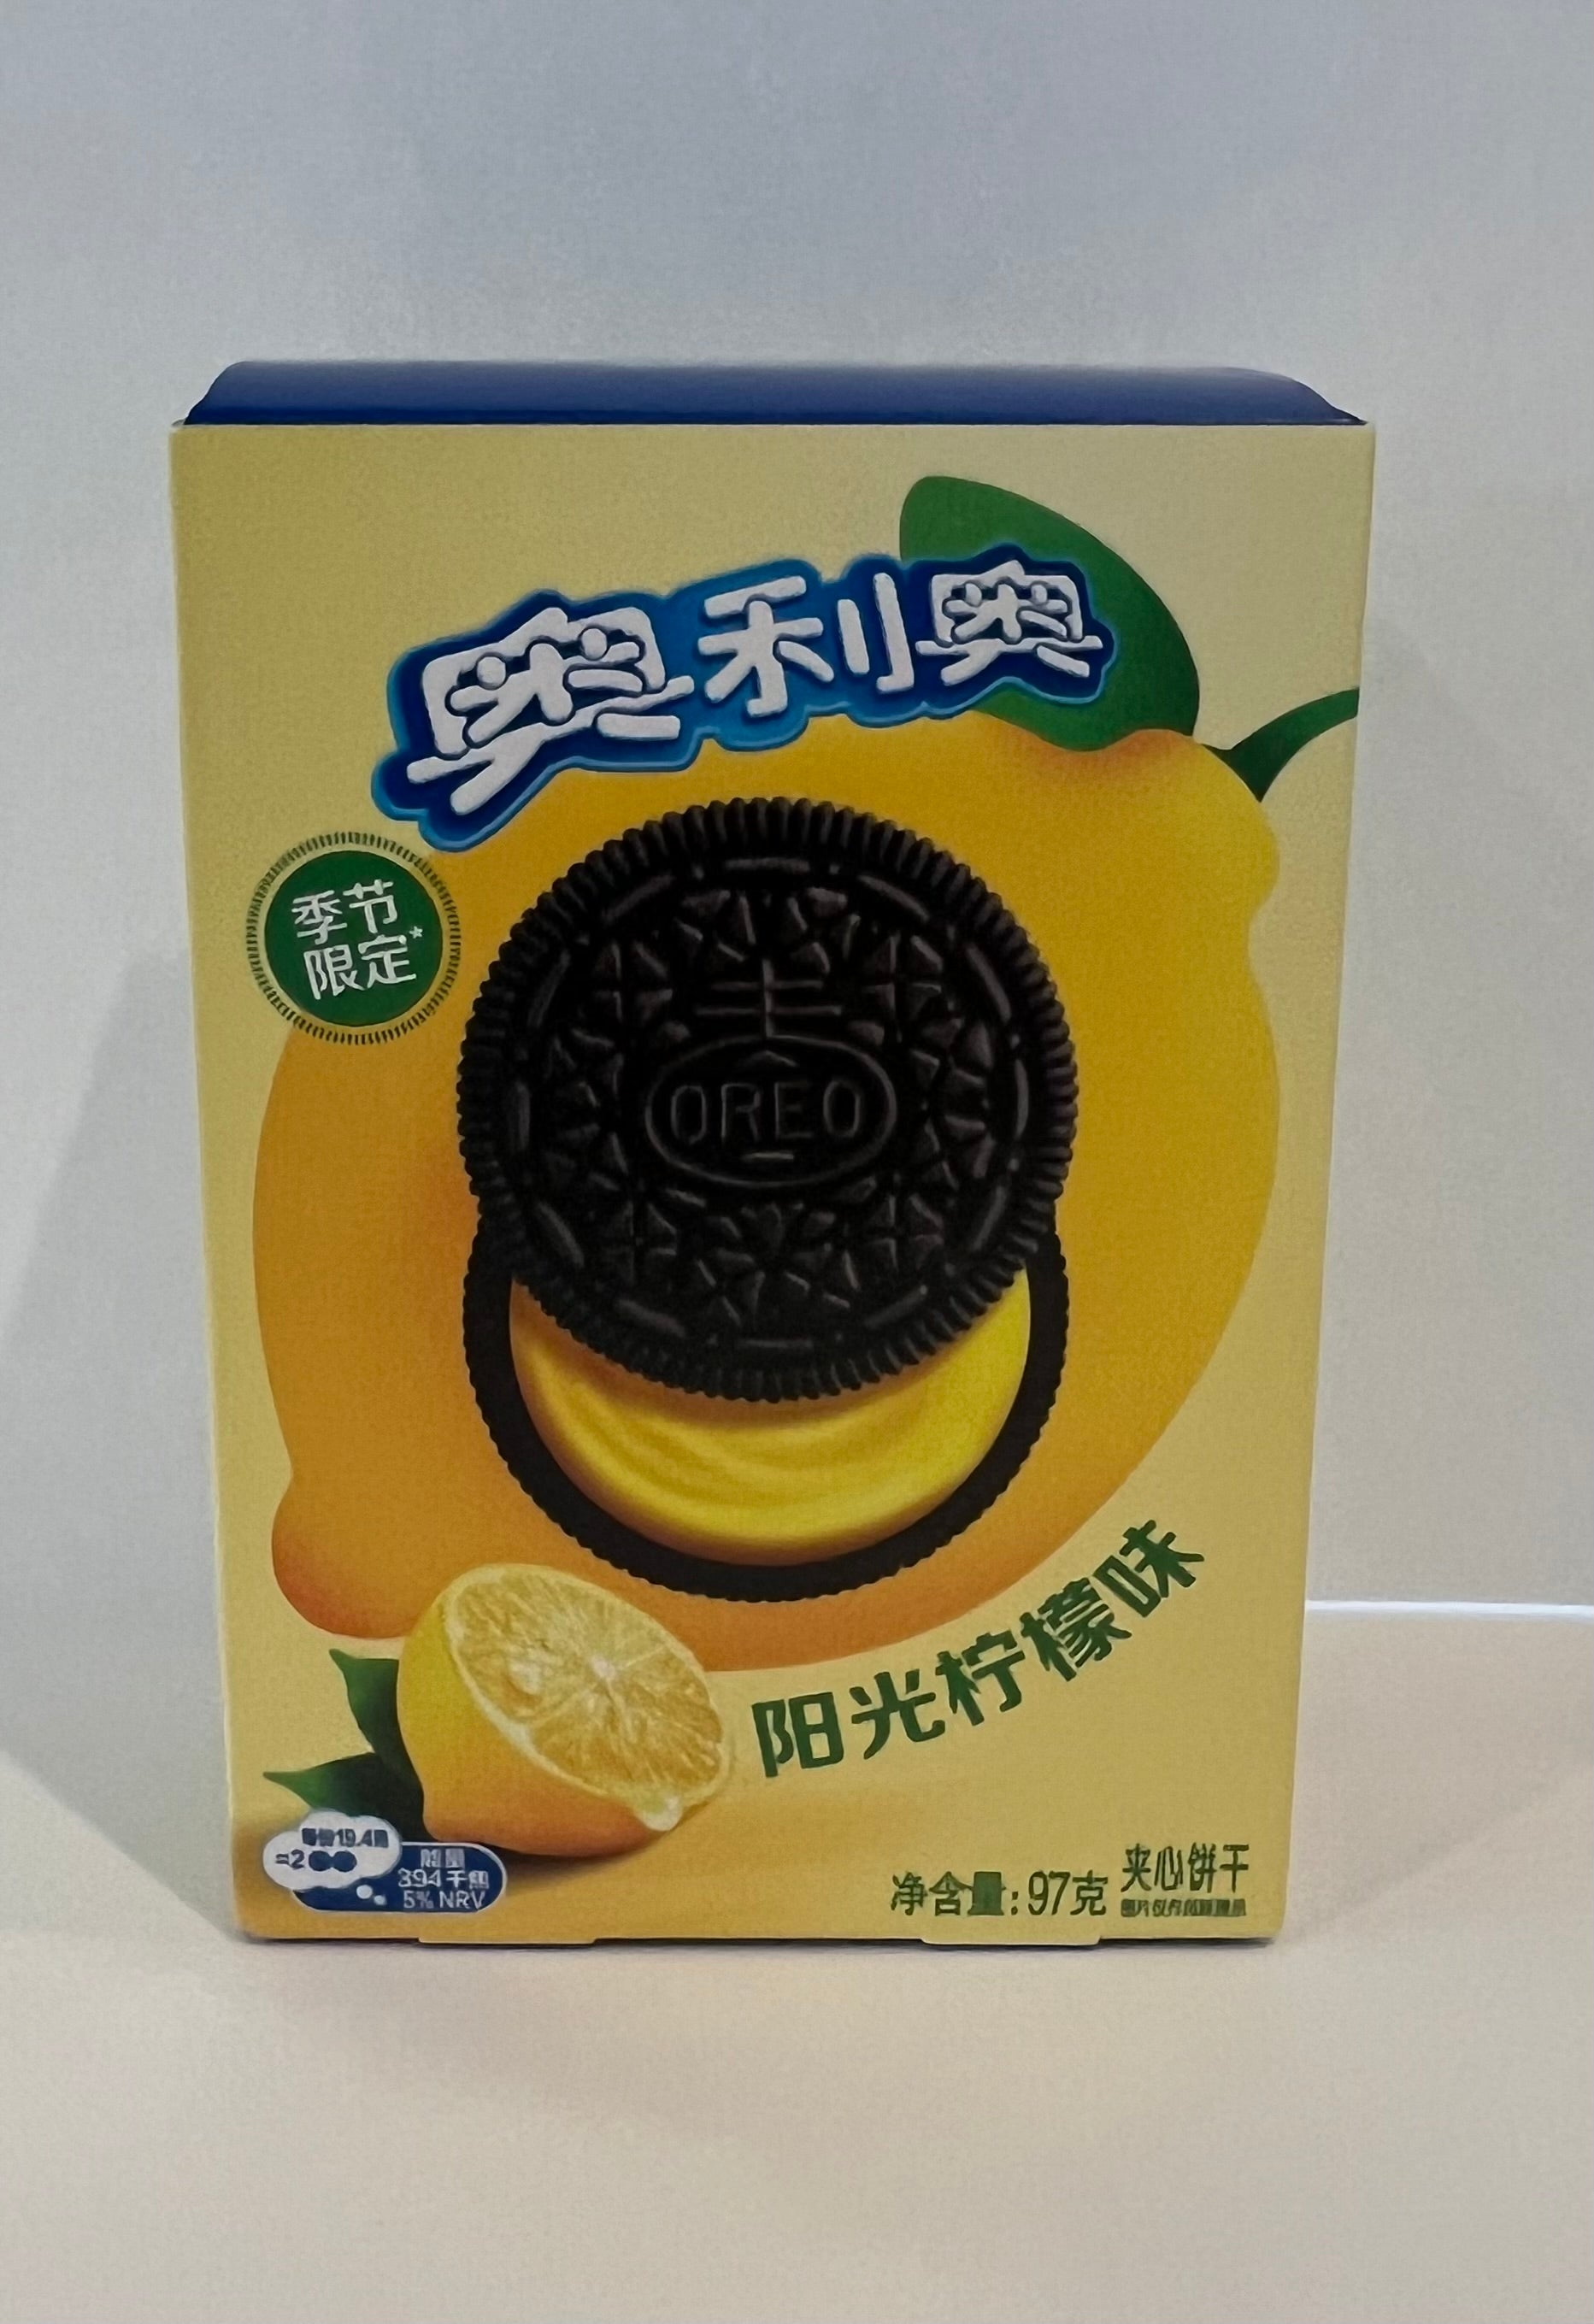 Oreo cookies Sunshine lemon flavored